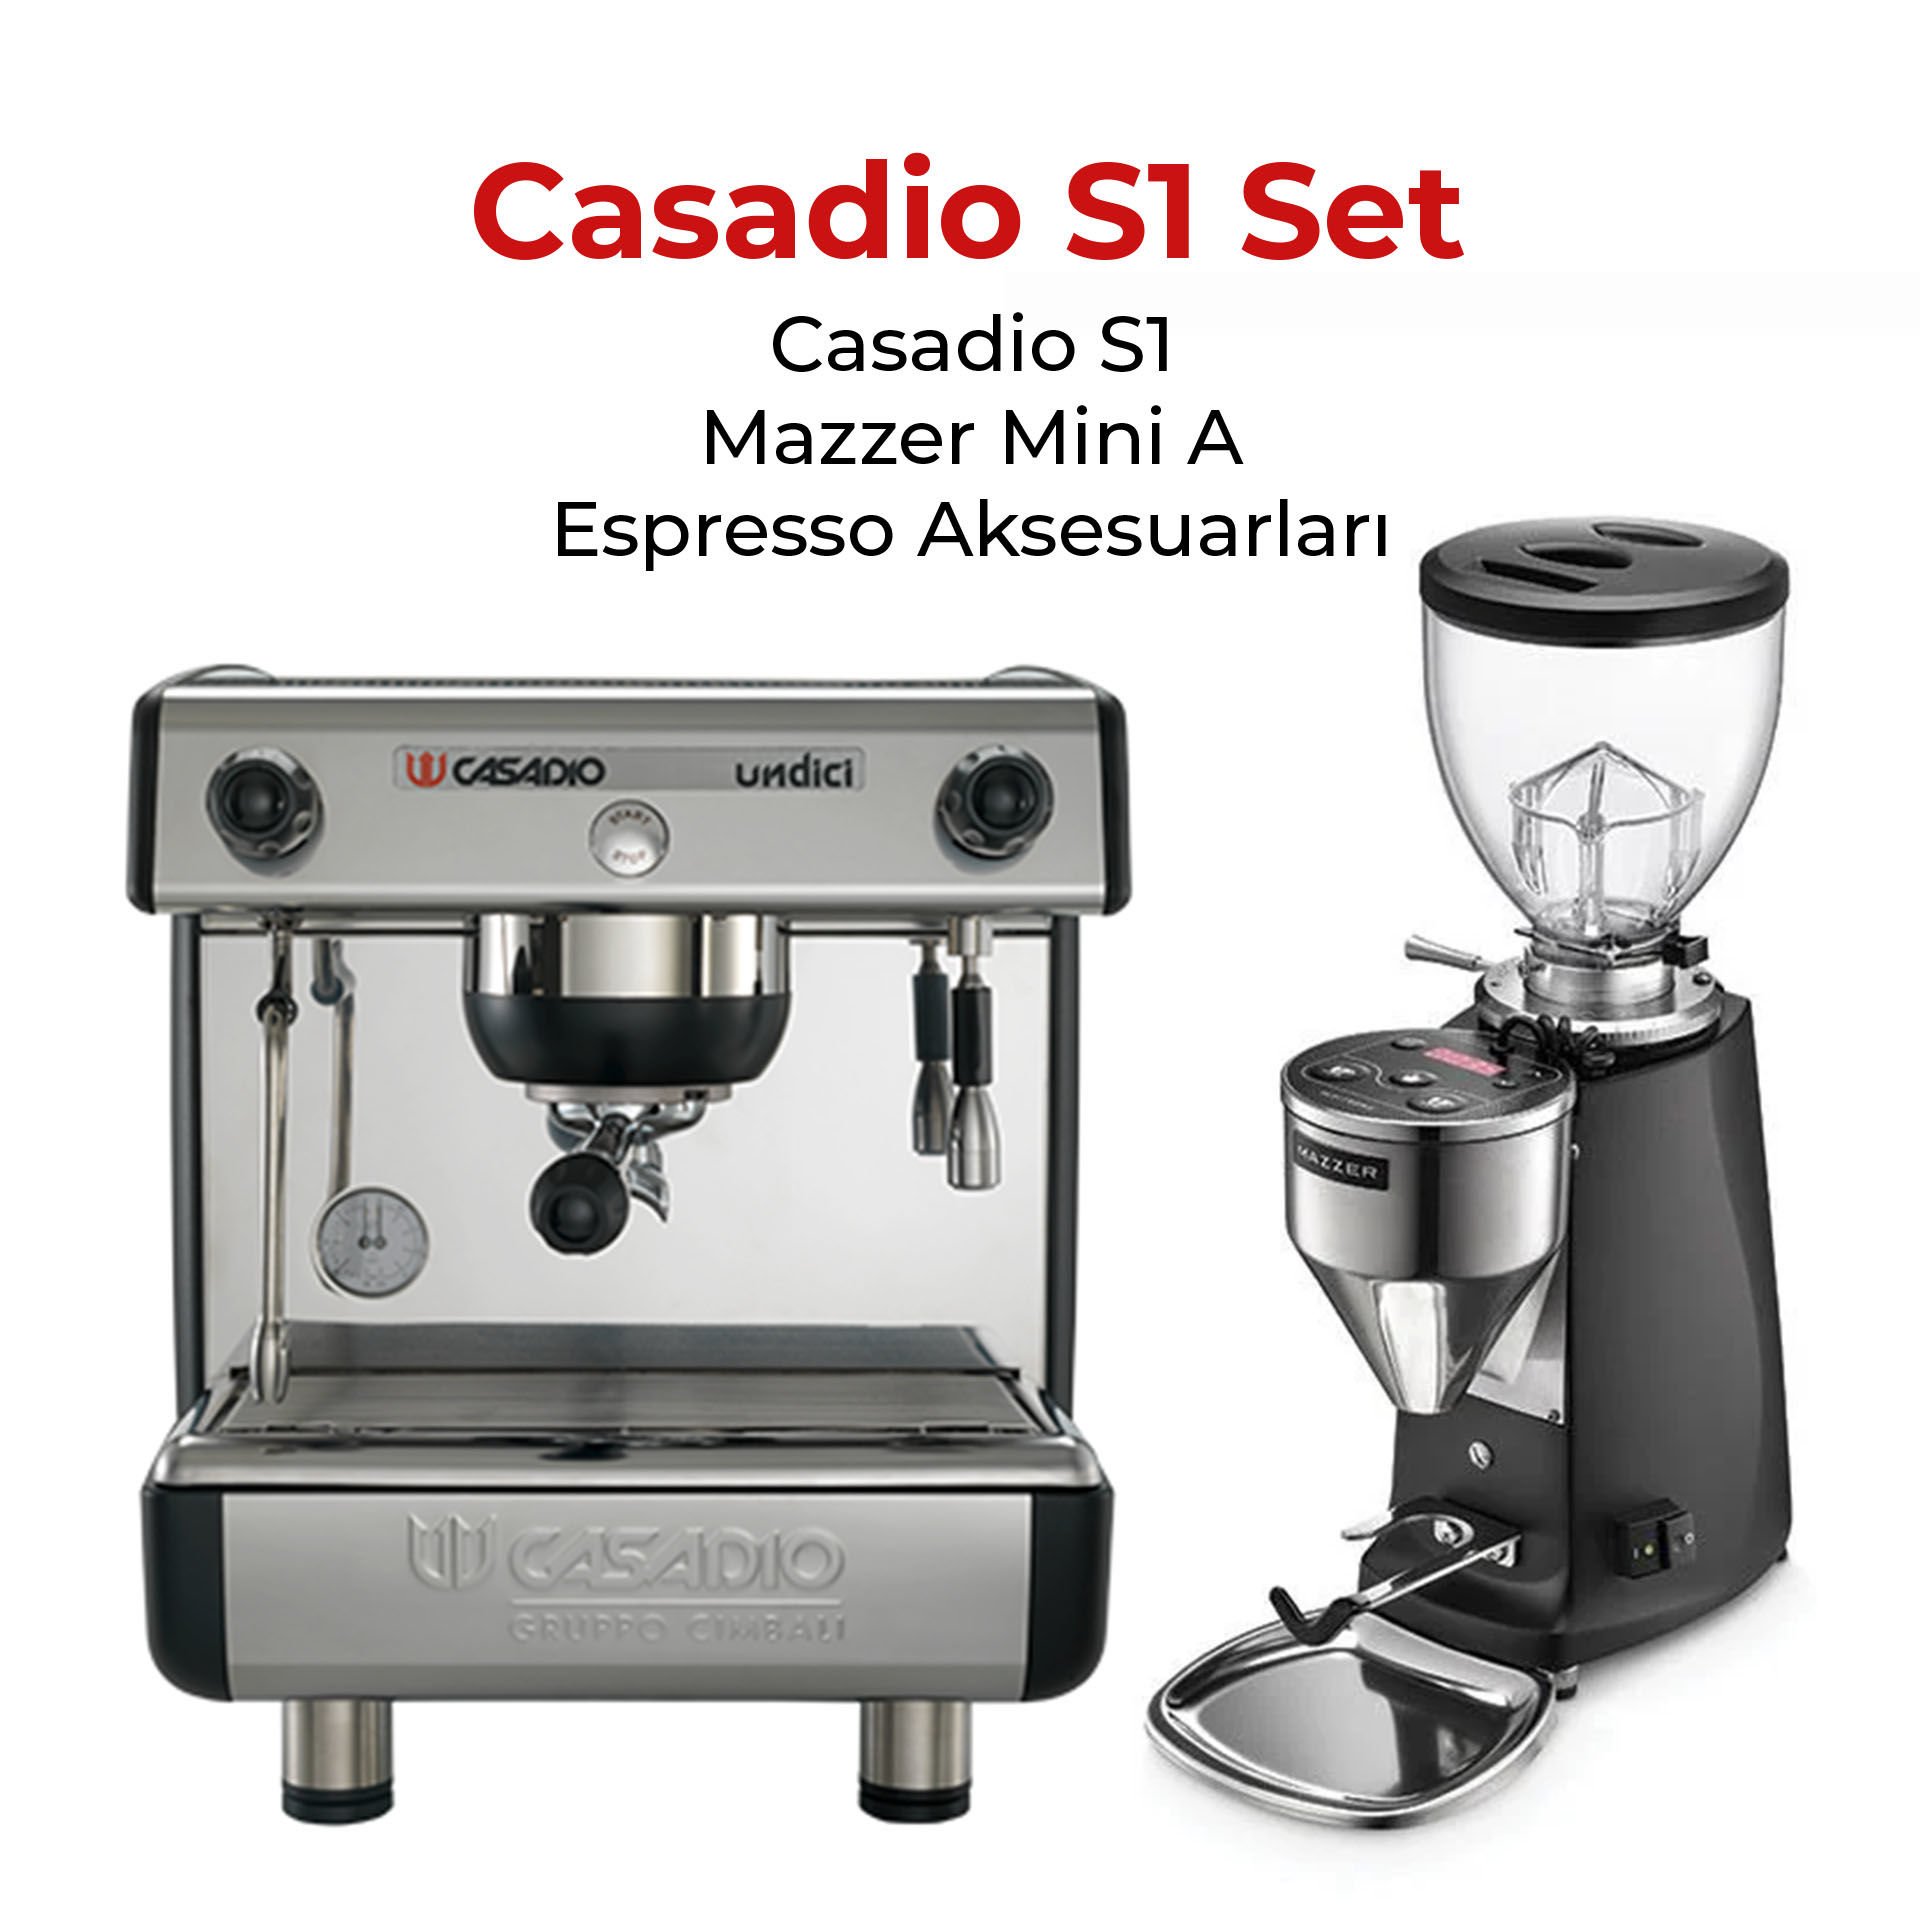 Casadio S1 Espresso Seti